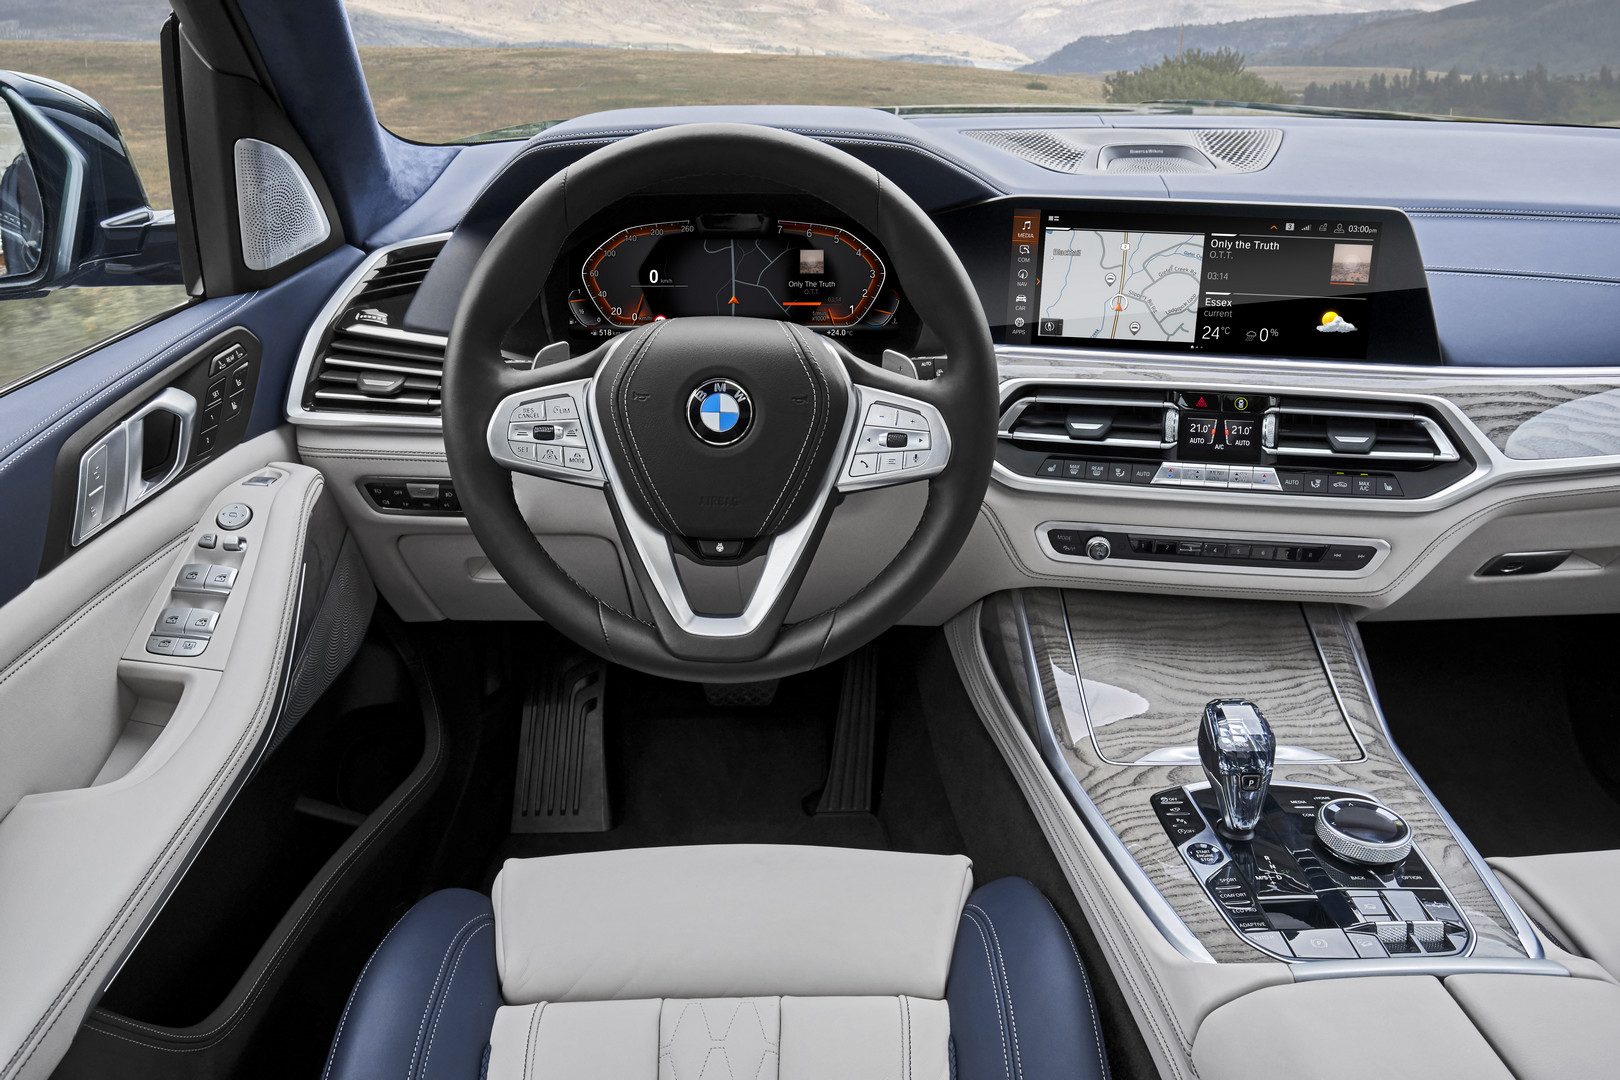 2019 BMW X7 Dashboard